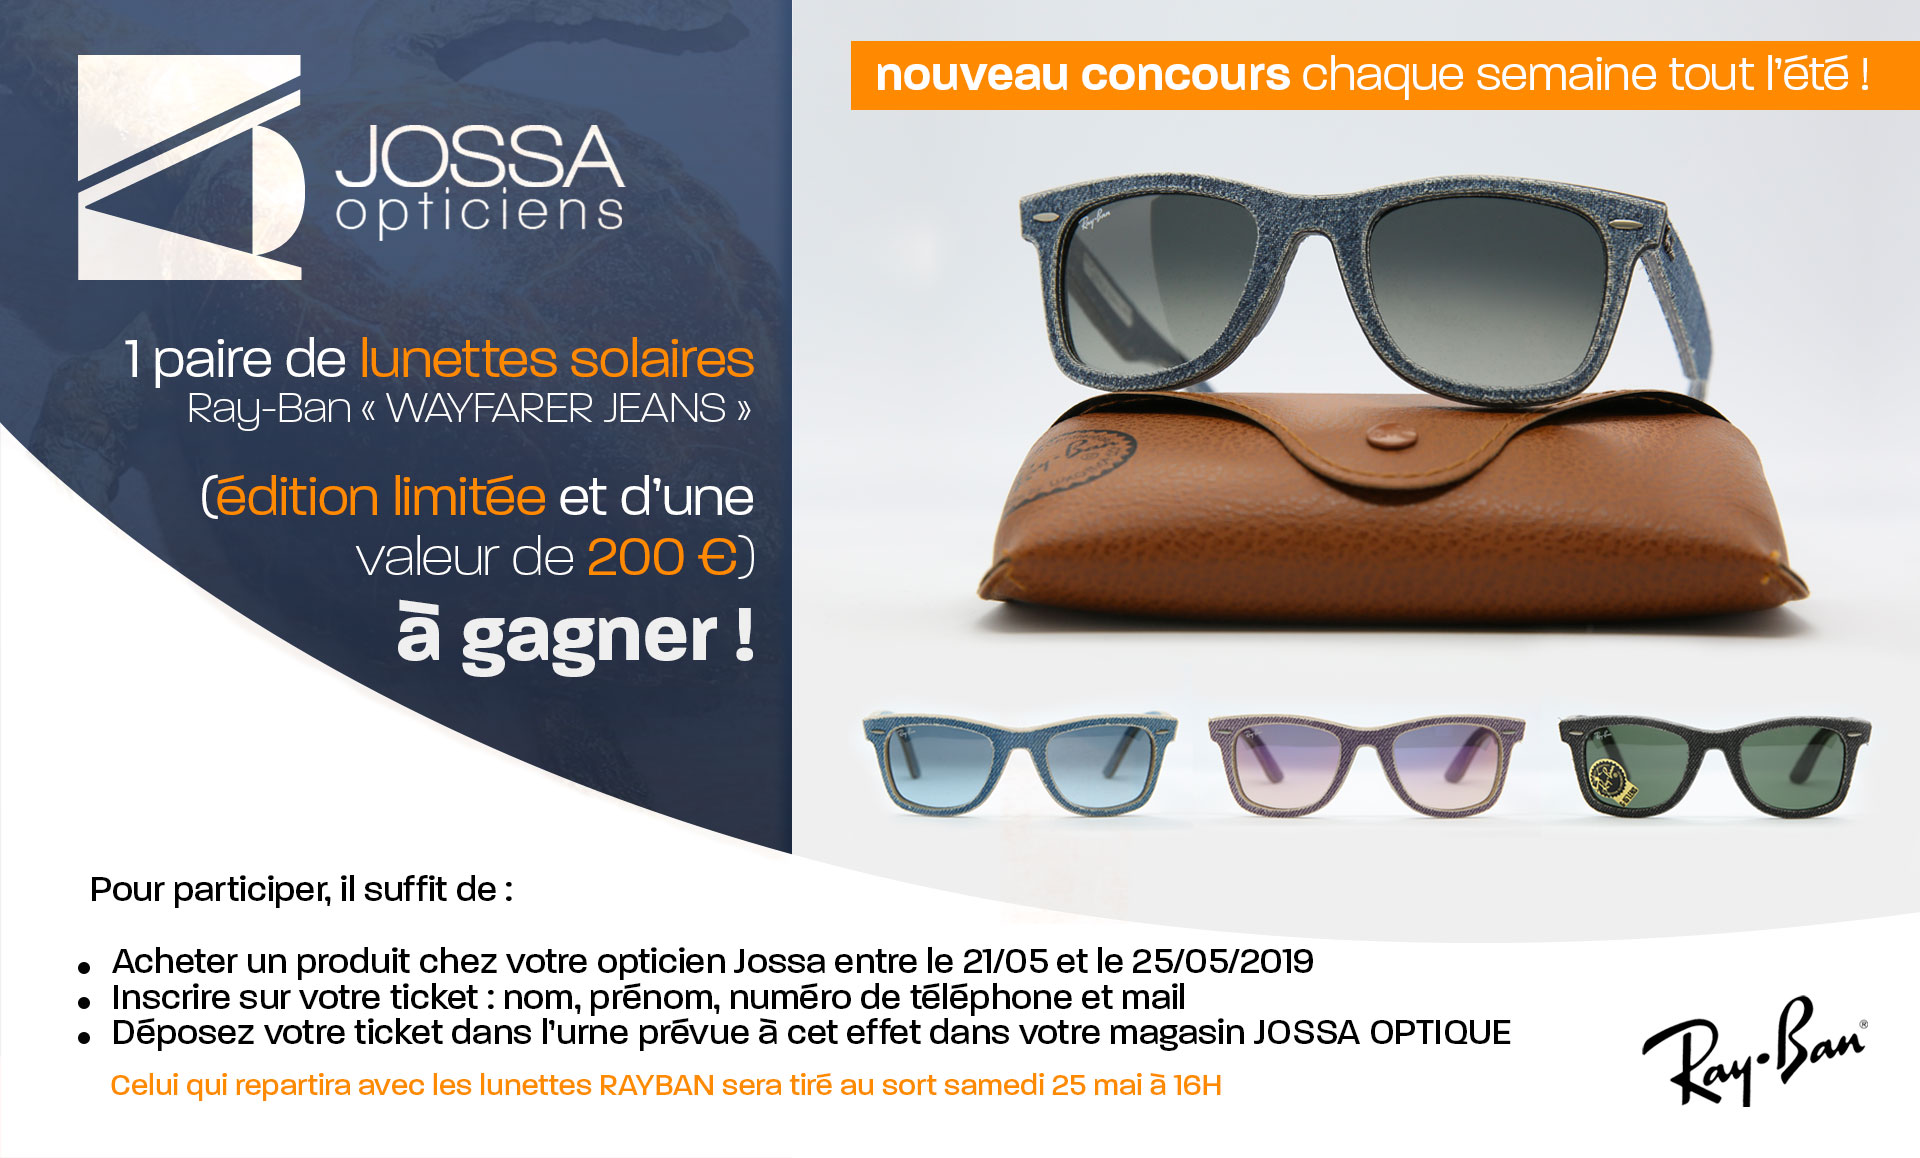 1 paire de lunettes solaires RAYBAN* « WAYFARER JEANS » (édition limitée et d’une valeur de 200 €) à gagner !